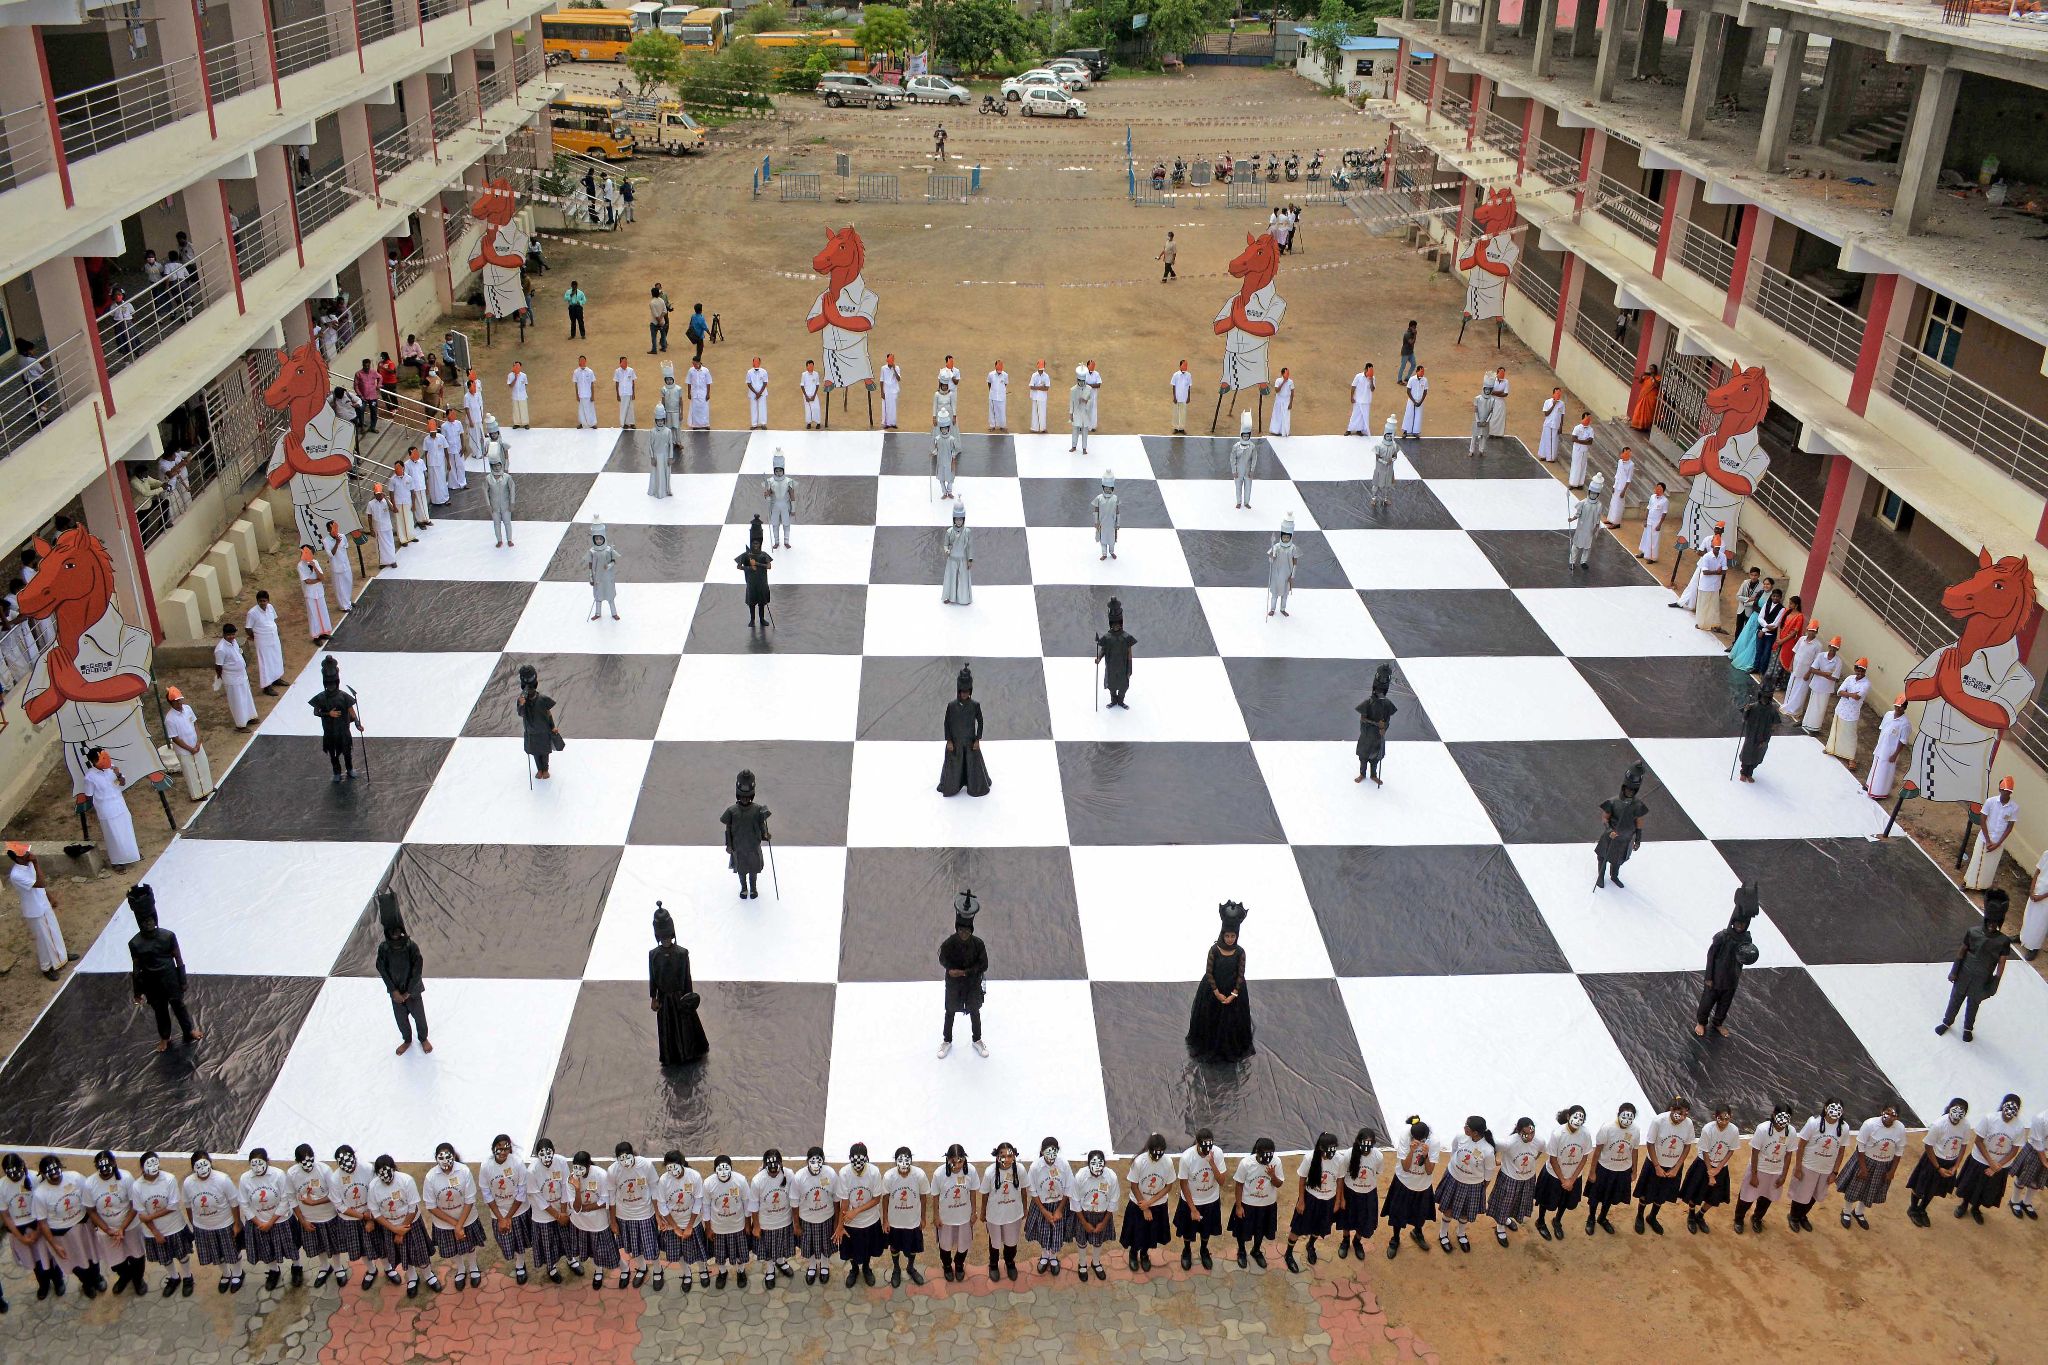 TNPSC, Current Affair, Chess Olympiad